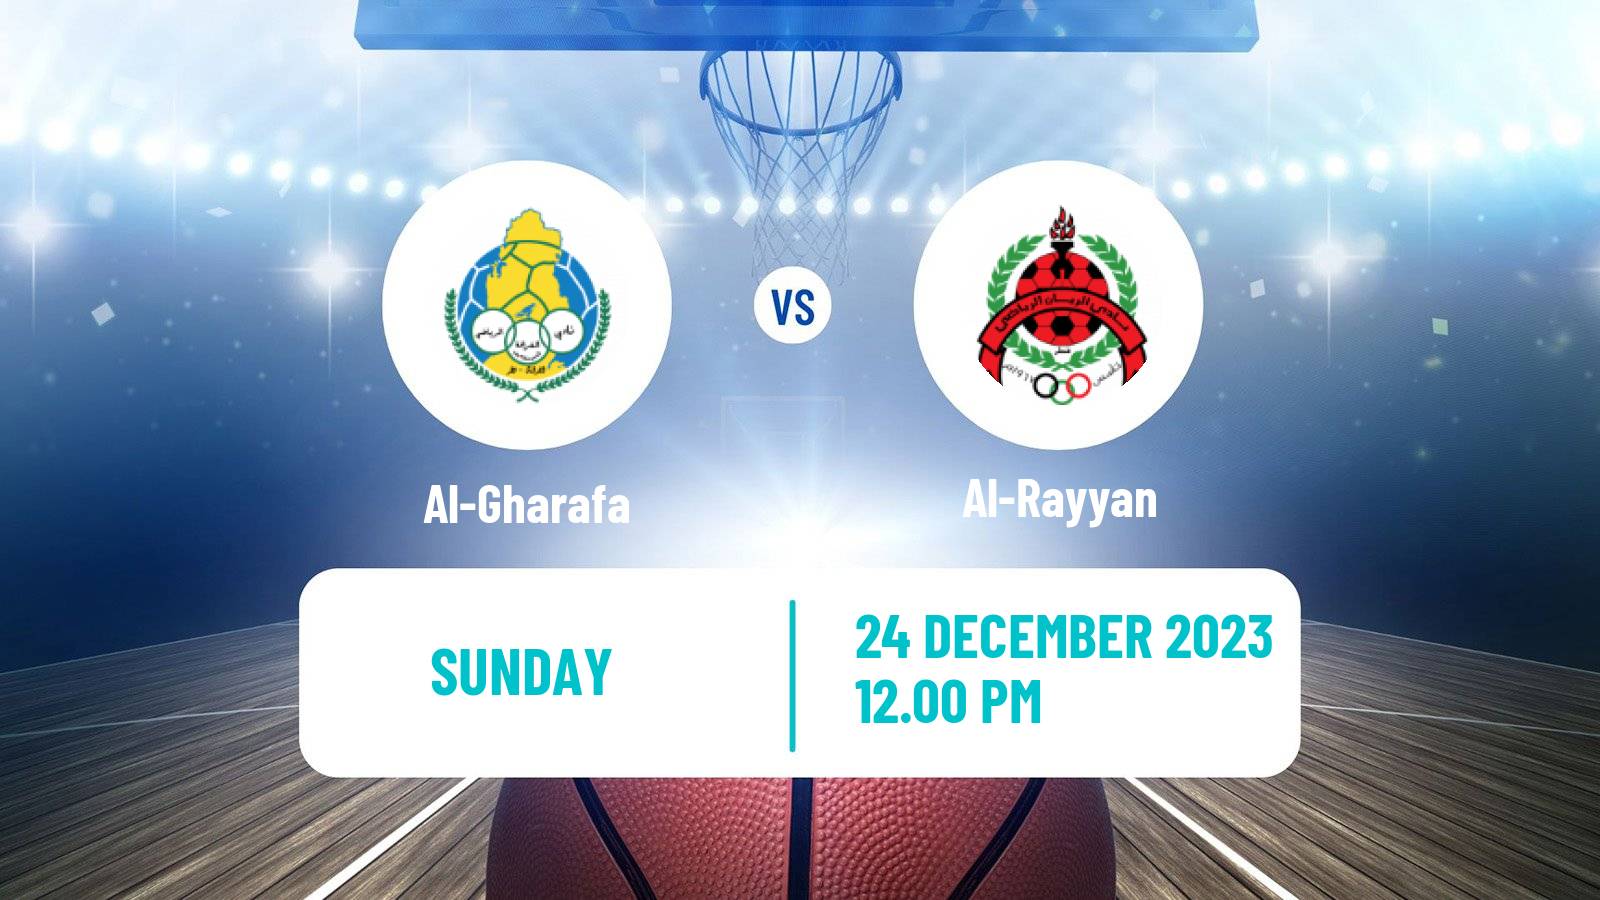 Basketball Qatar Basketball League Al-Gharafa - Al-Rayyan